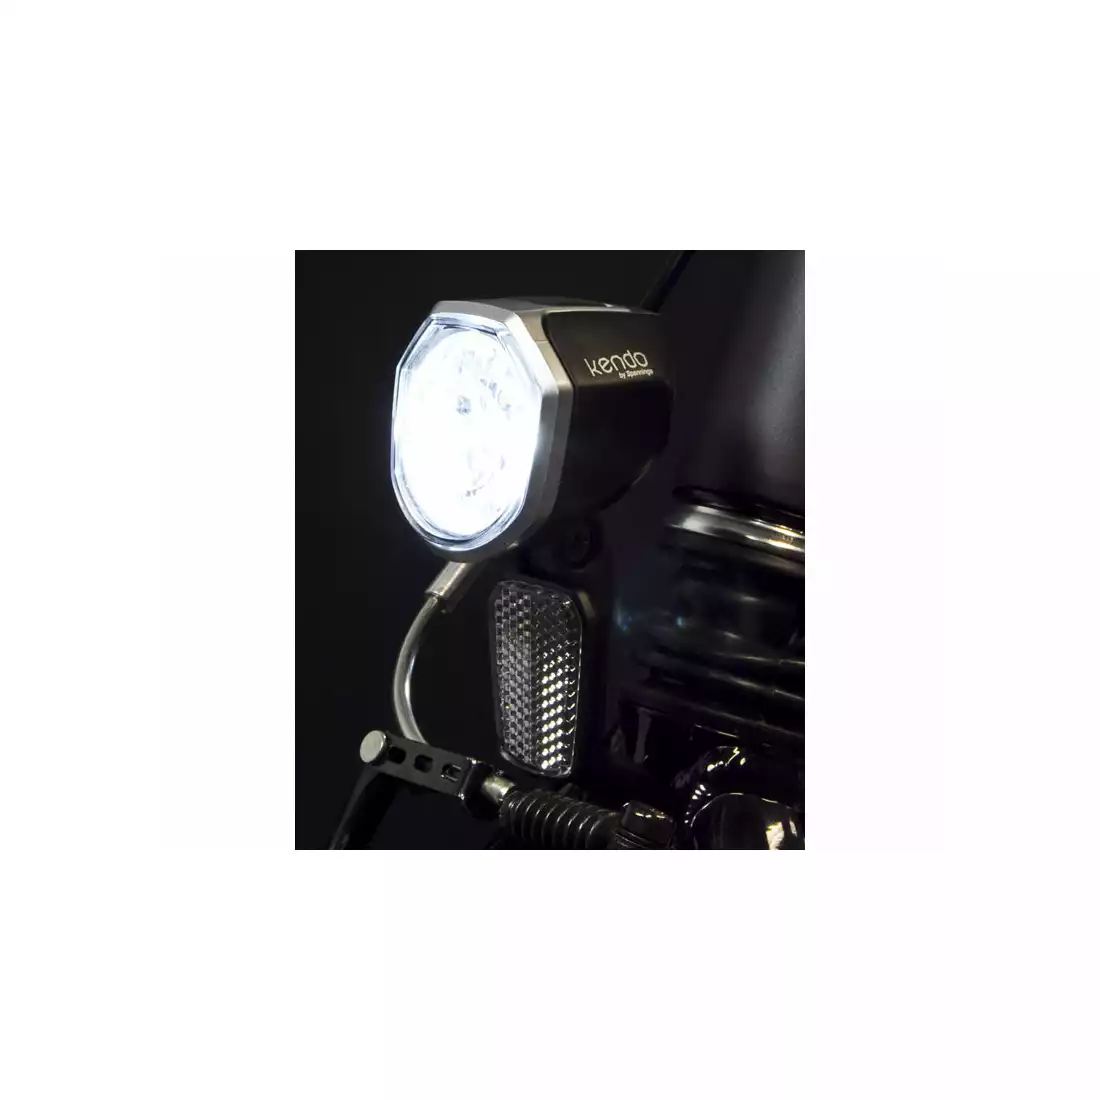 Lampka przednia SPANNINGA KENDO+ XDO 30 luxów/120 lumenów pod dynamo + kabel 55cm SNG-H057038